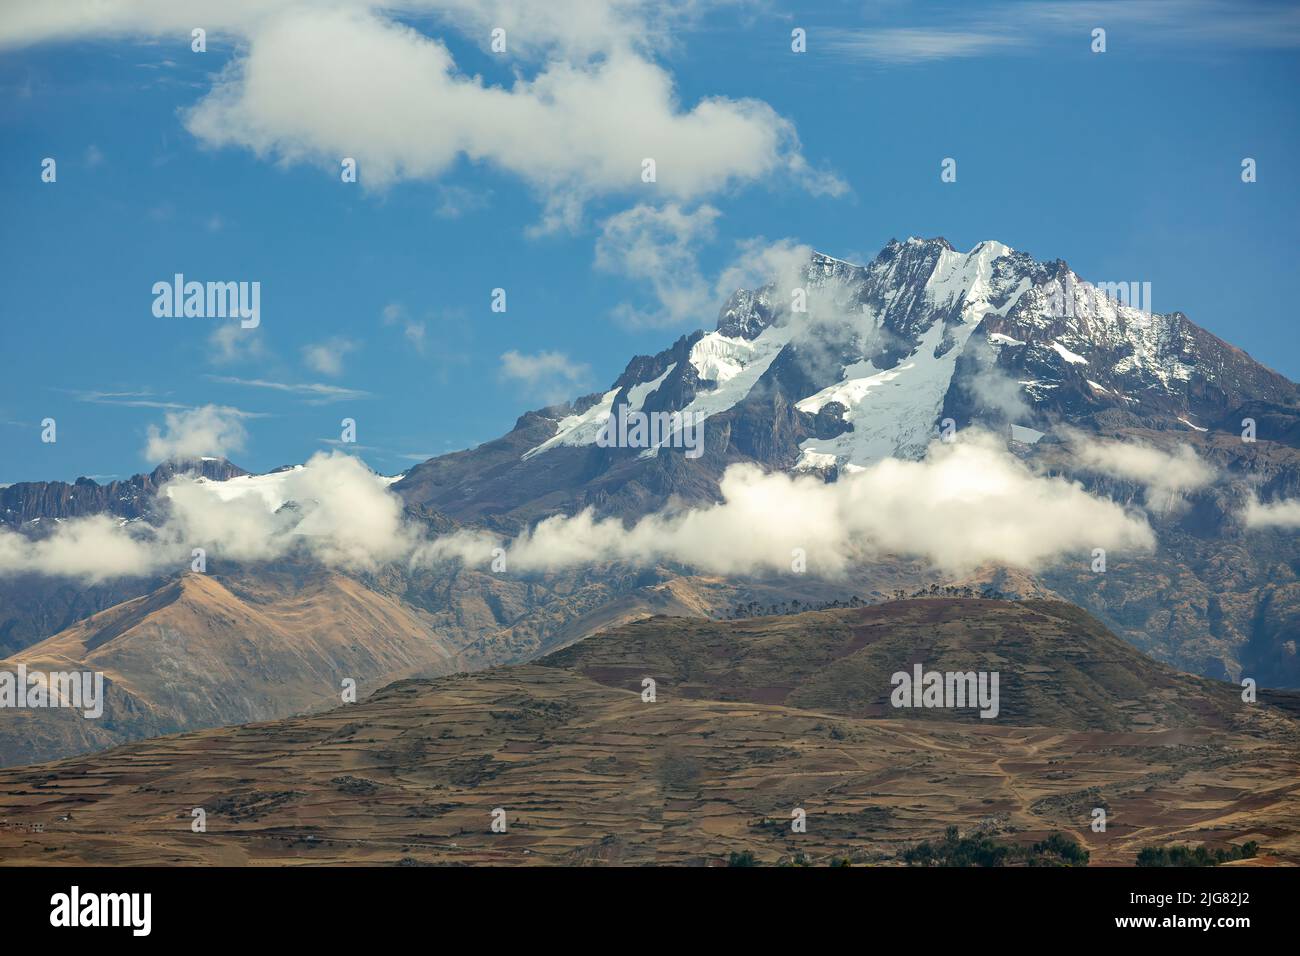 Snow-covered Mt. Chicon (17,778 ft), near Chinchero, Cusco, Peru Stock Photo